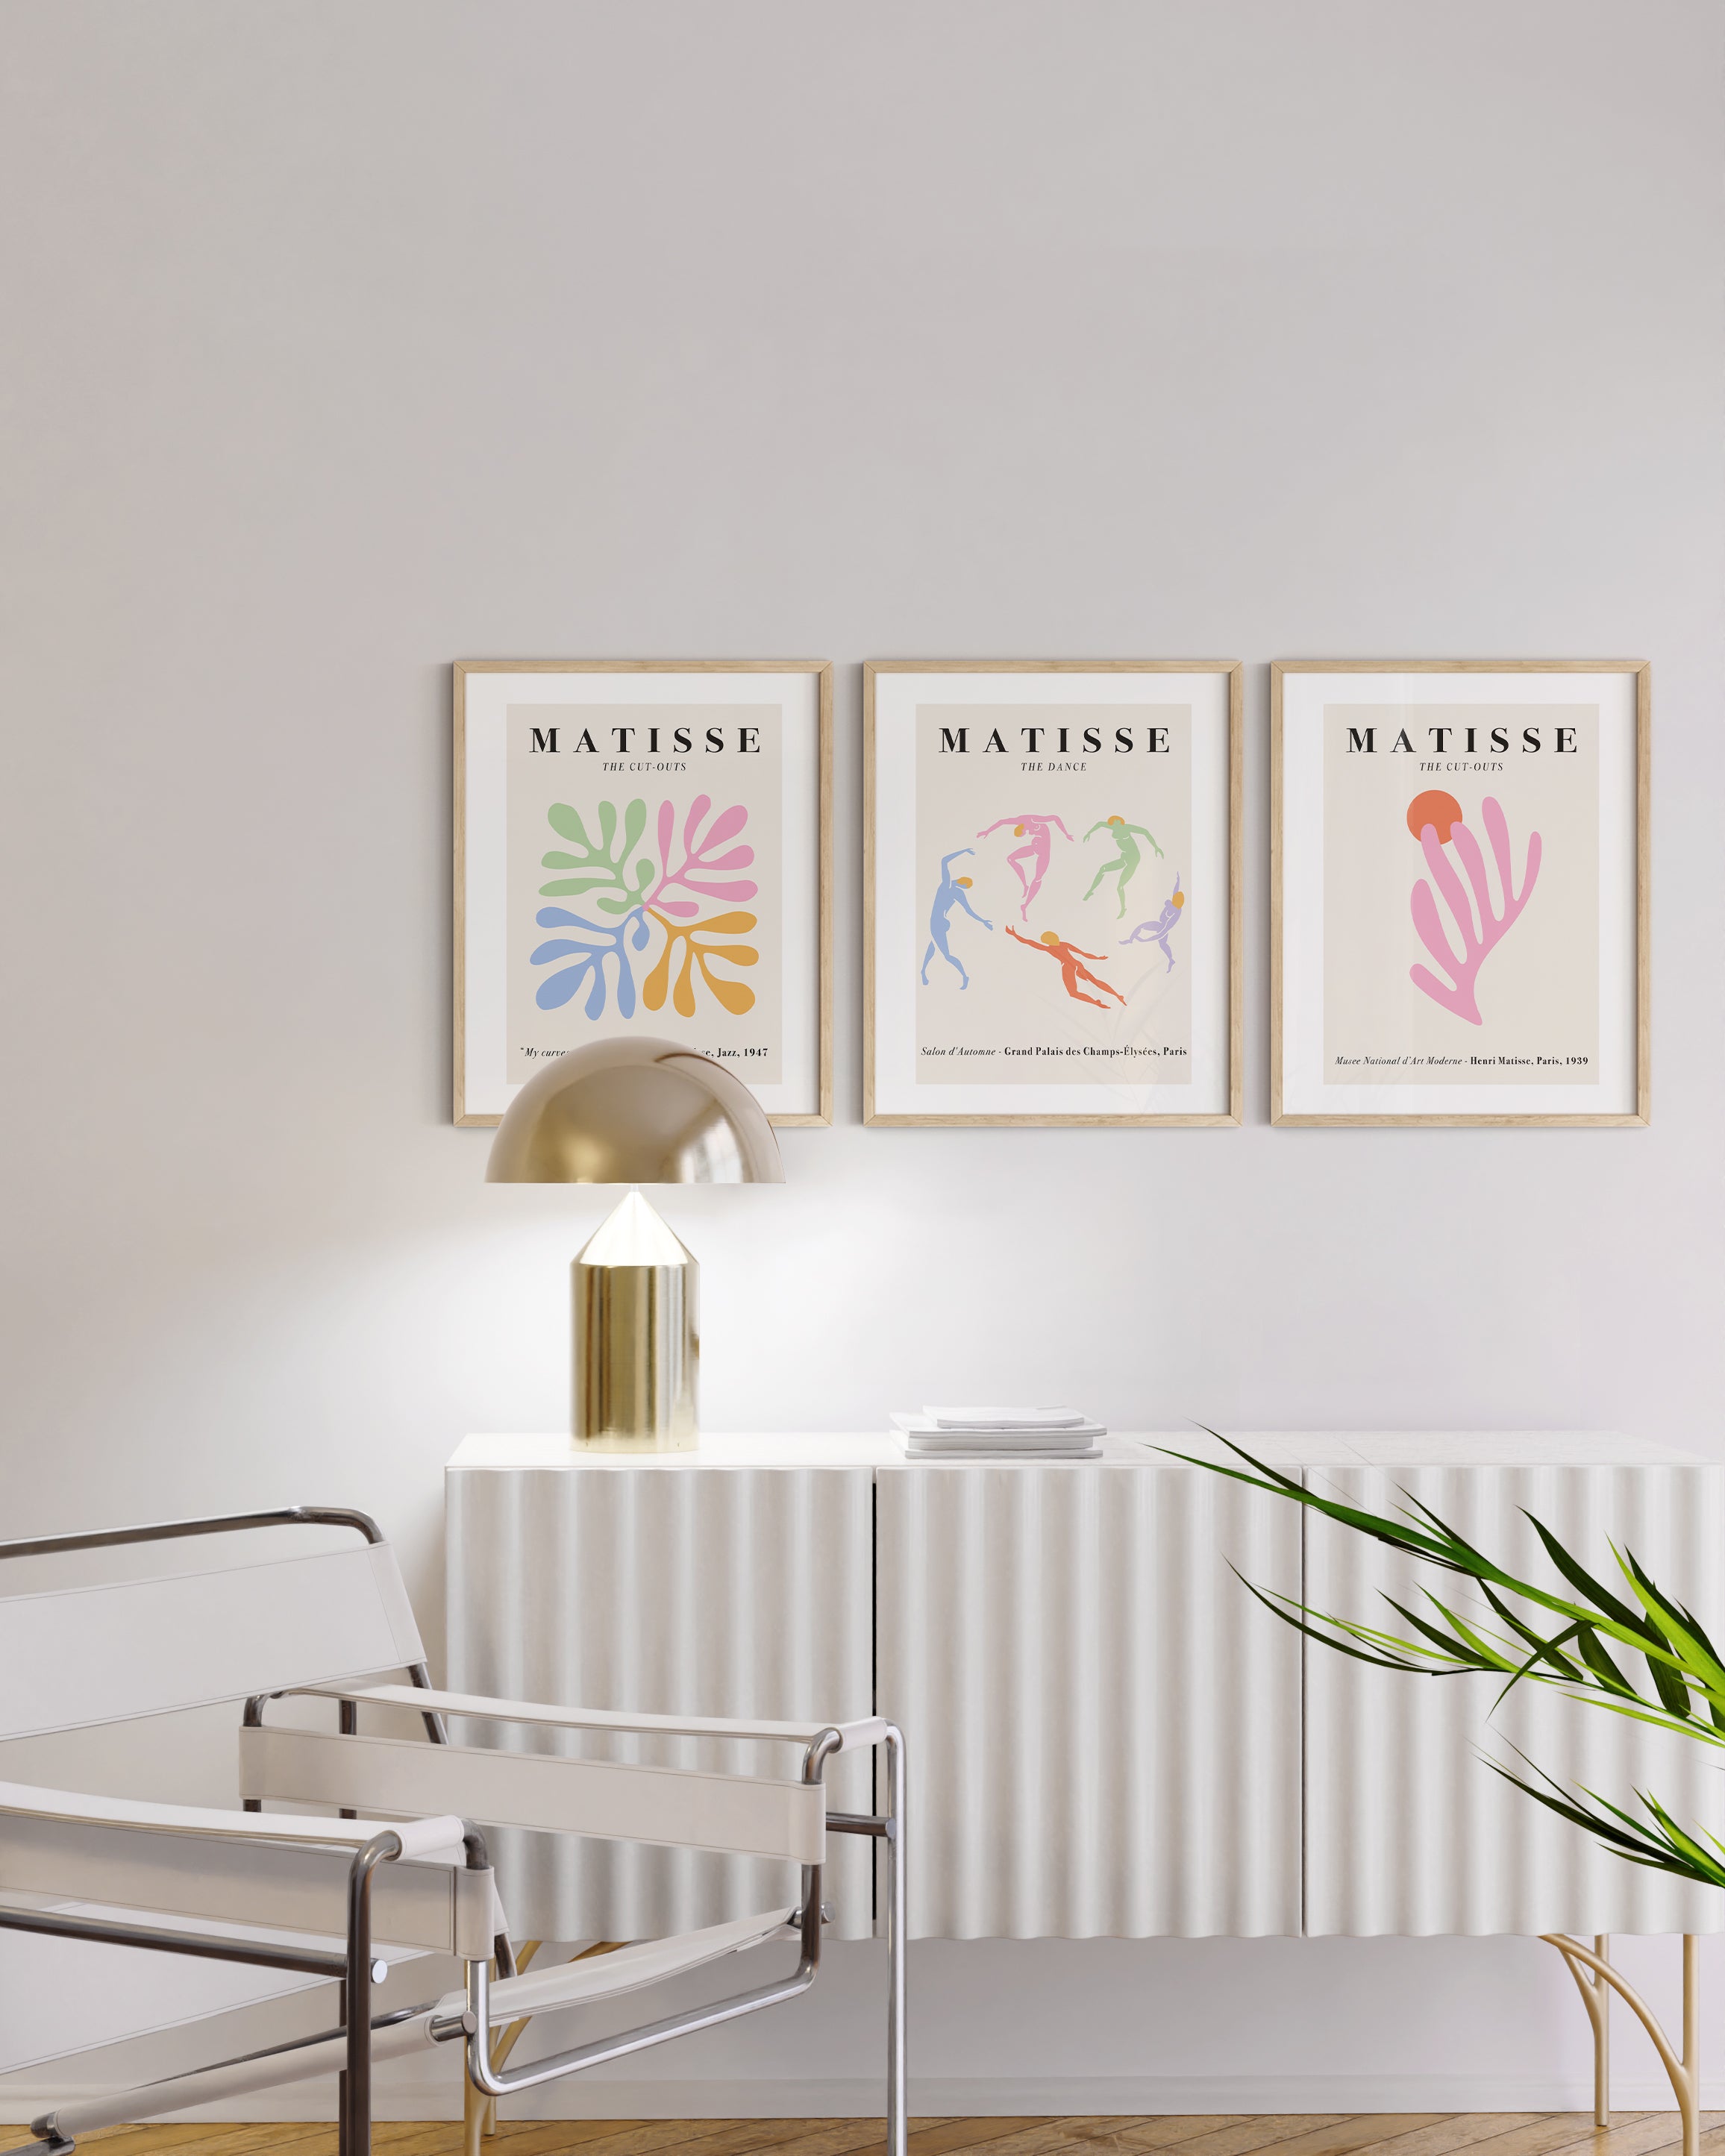 譛�螟ｧ74�ｼ�繧ｪ繝包ｼ？AUS AND HUES Set, Framed Poster Art, Wall Minimalist Danis Matisse  Poster Poster Aesthetic, Room Art Sets Set, Framed Poster, Modern Matisse  Set, for 繧､繝吶Φ繝医�∬ｲｩ菫�逕ｨ